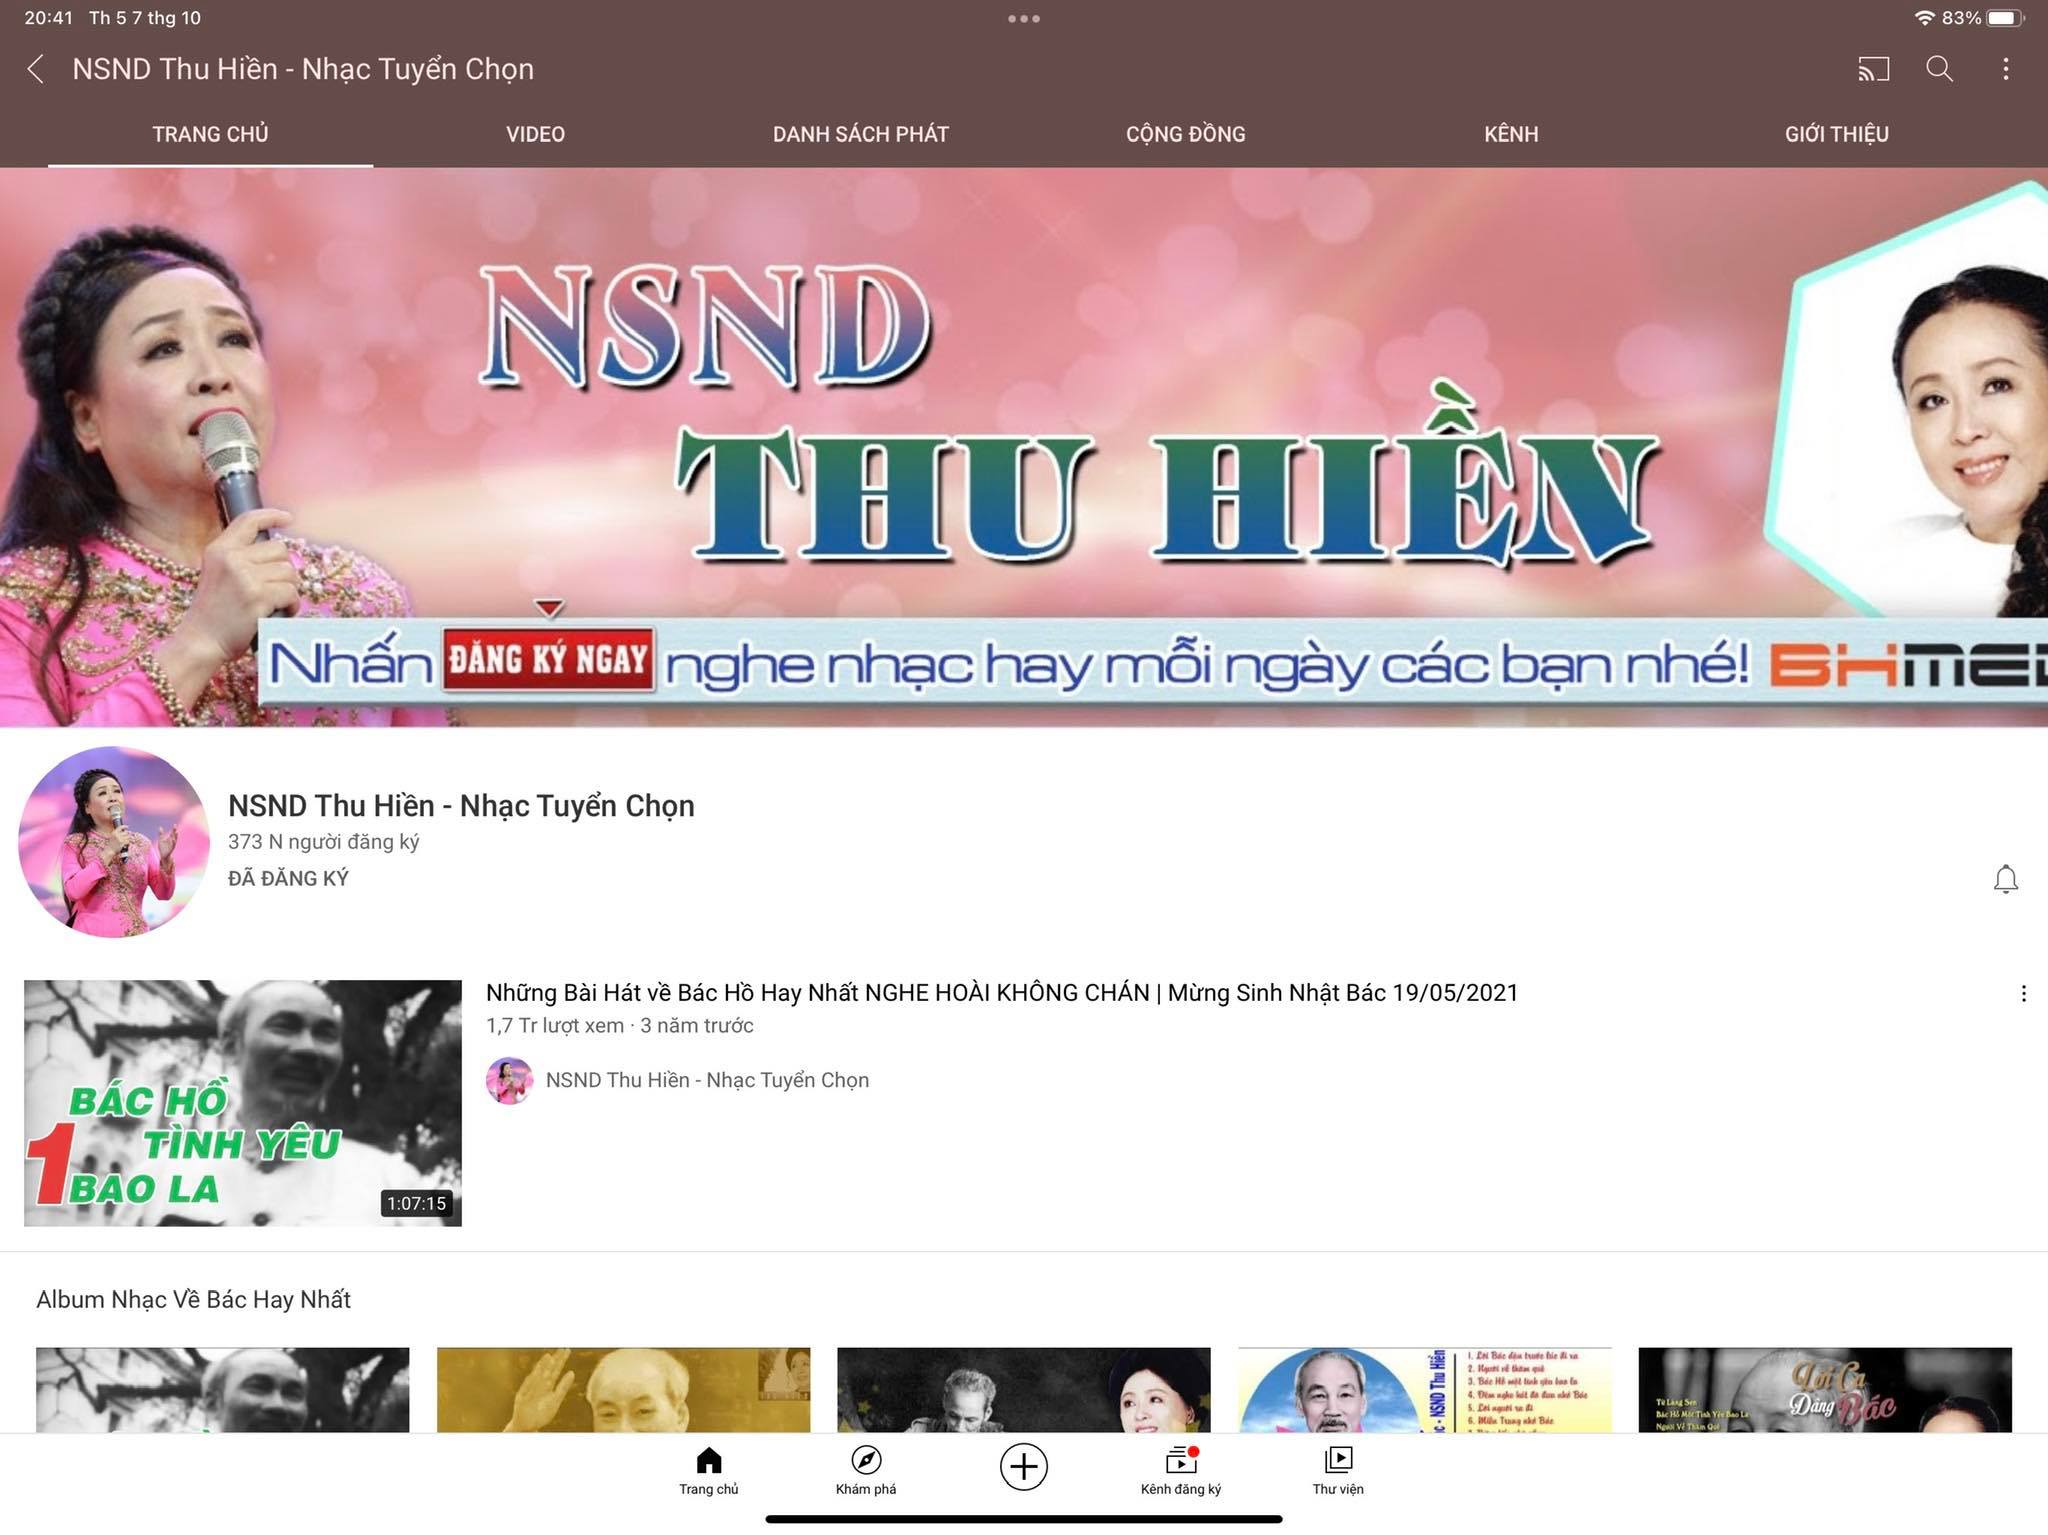 BH Media ‘mạo danh’ NSND Thu Hiền lập kênh trên YouTube? - Ảnh 1.